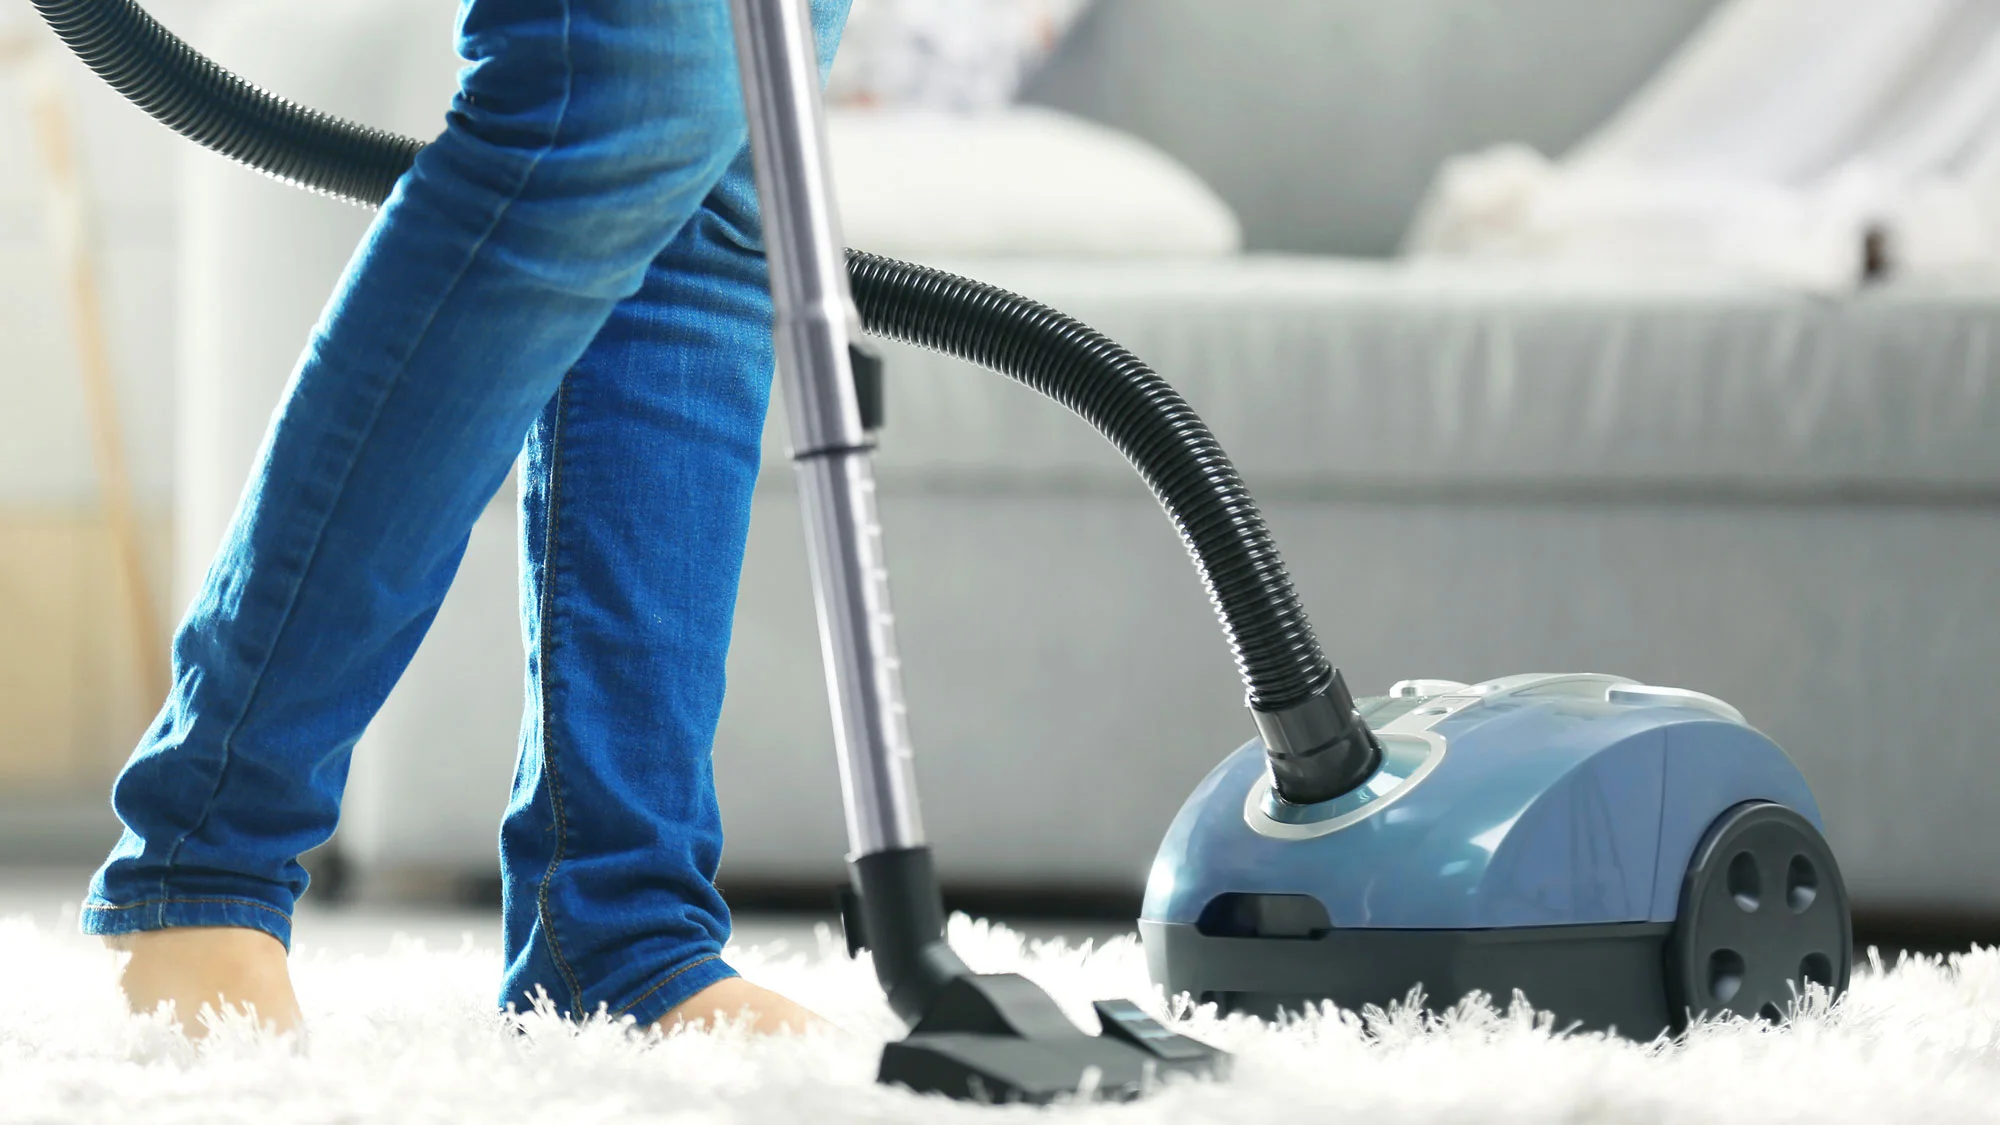 Best Vacuum For Thick Carpet 2022